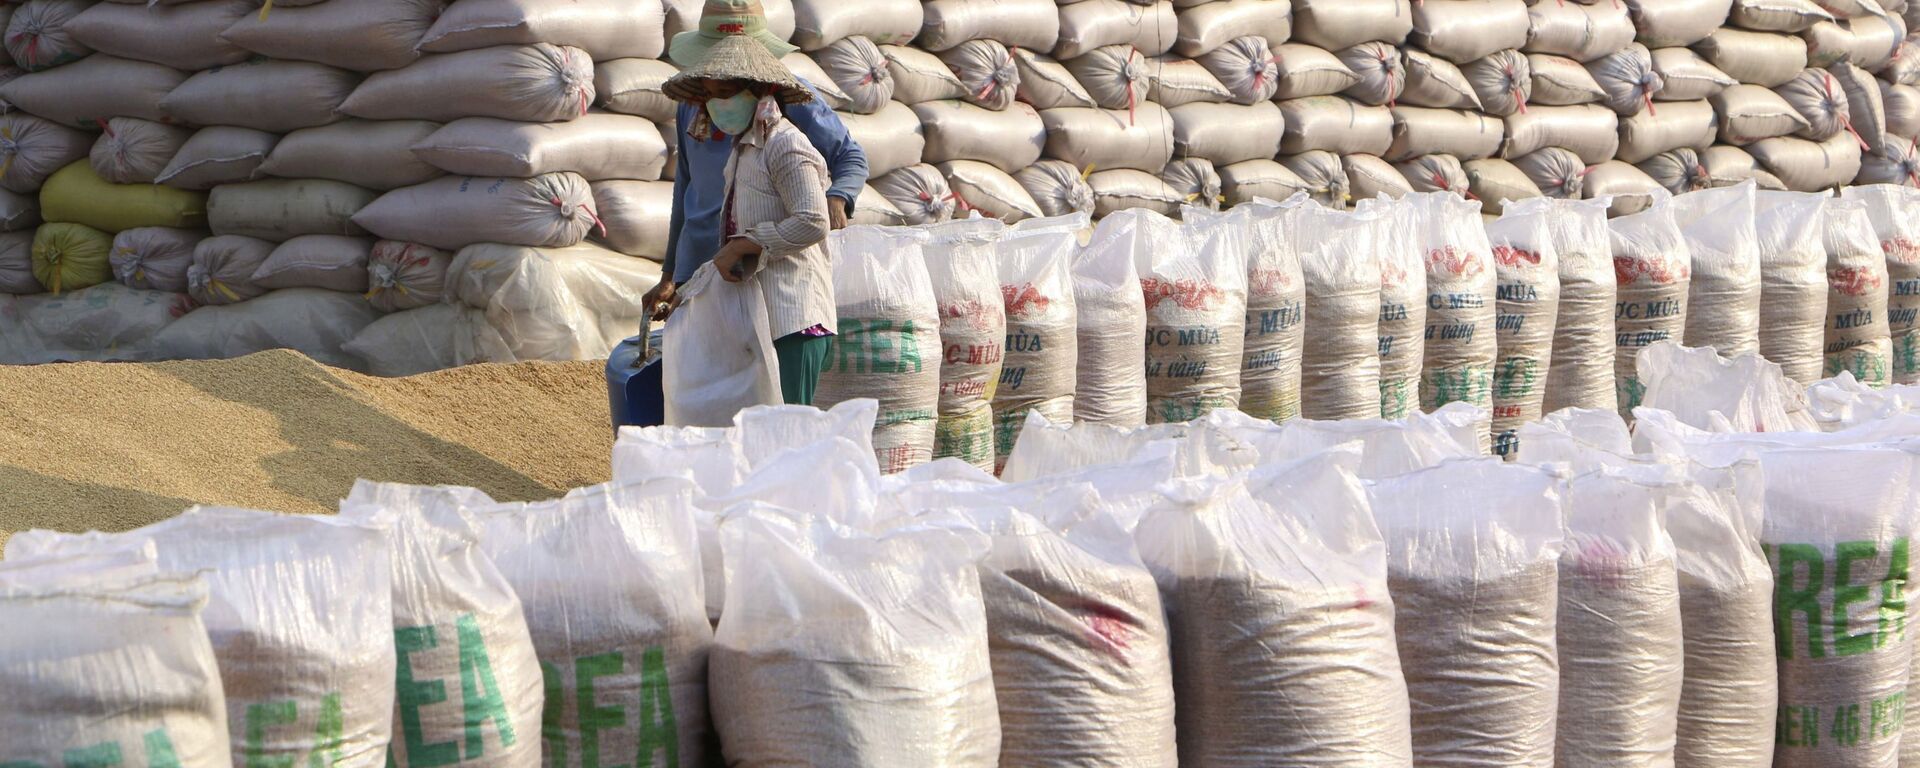 Xuất khẩu gạo của Việt Nam tiếp tục đạt mức giá cao kỷ lục, năm 2020, kim ngạch ước đạt trên 3 tỉ USD. - Sputnik Việt Nam, 1920, 13.01.2021